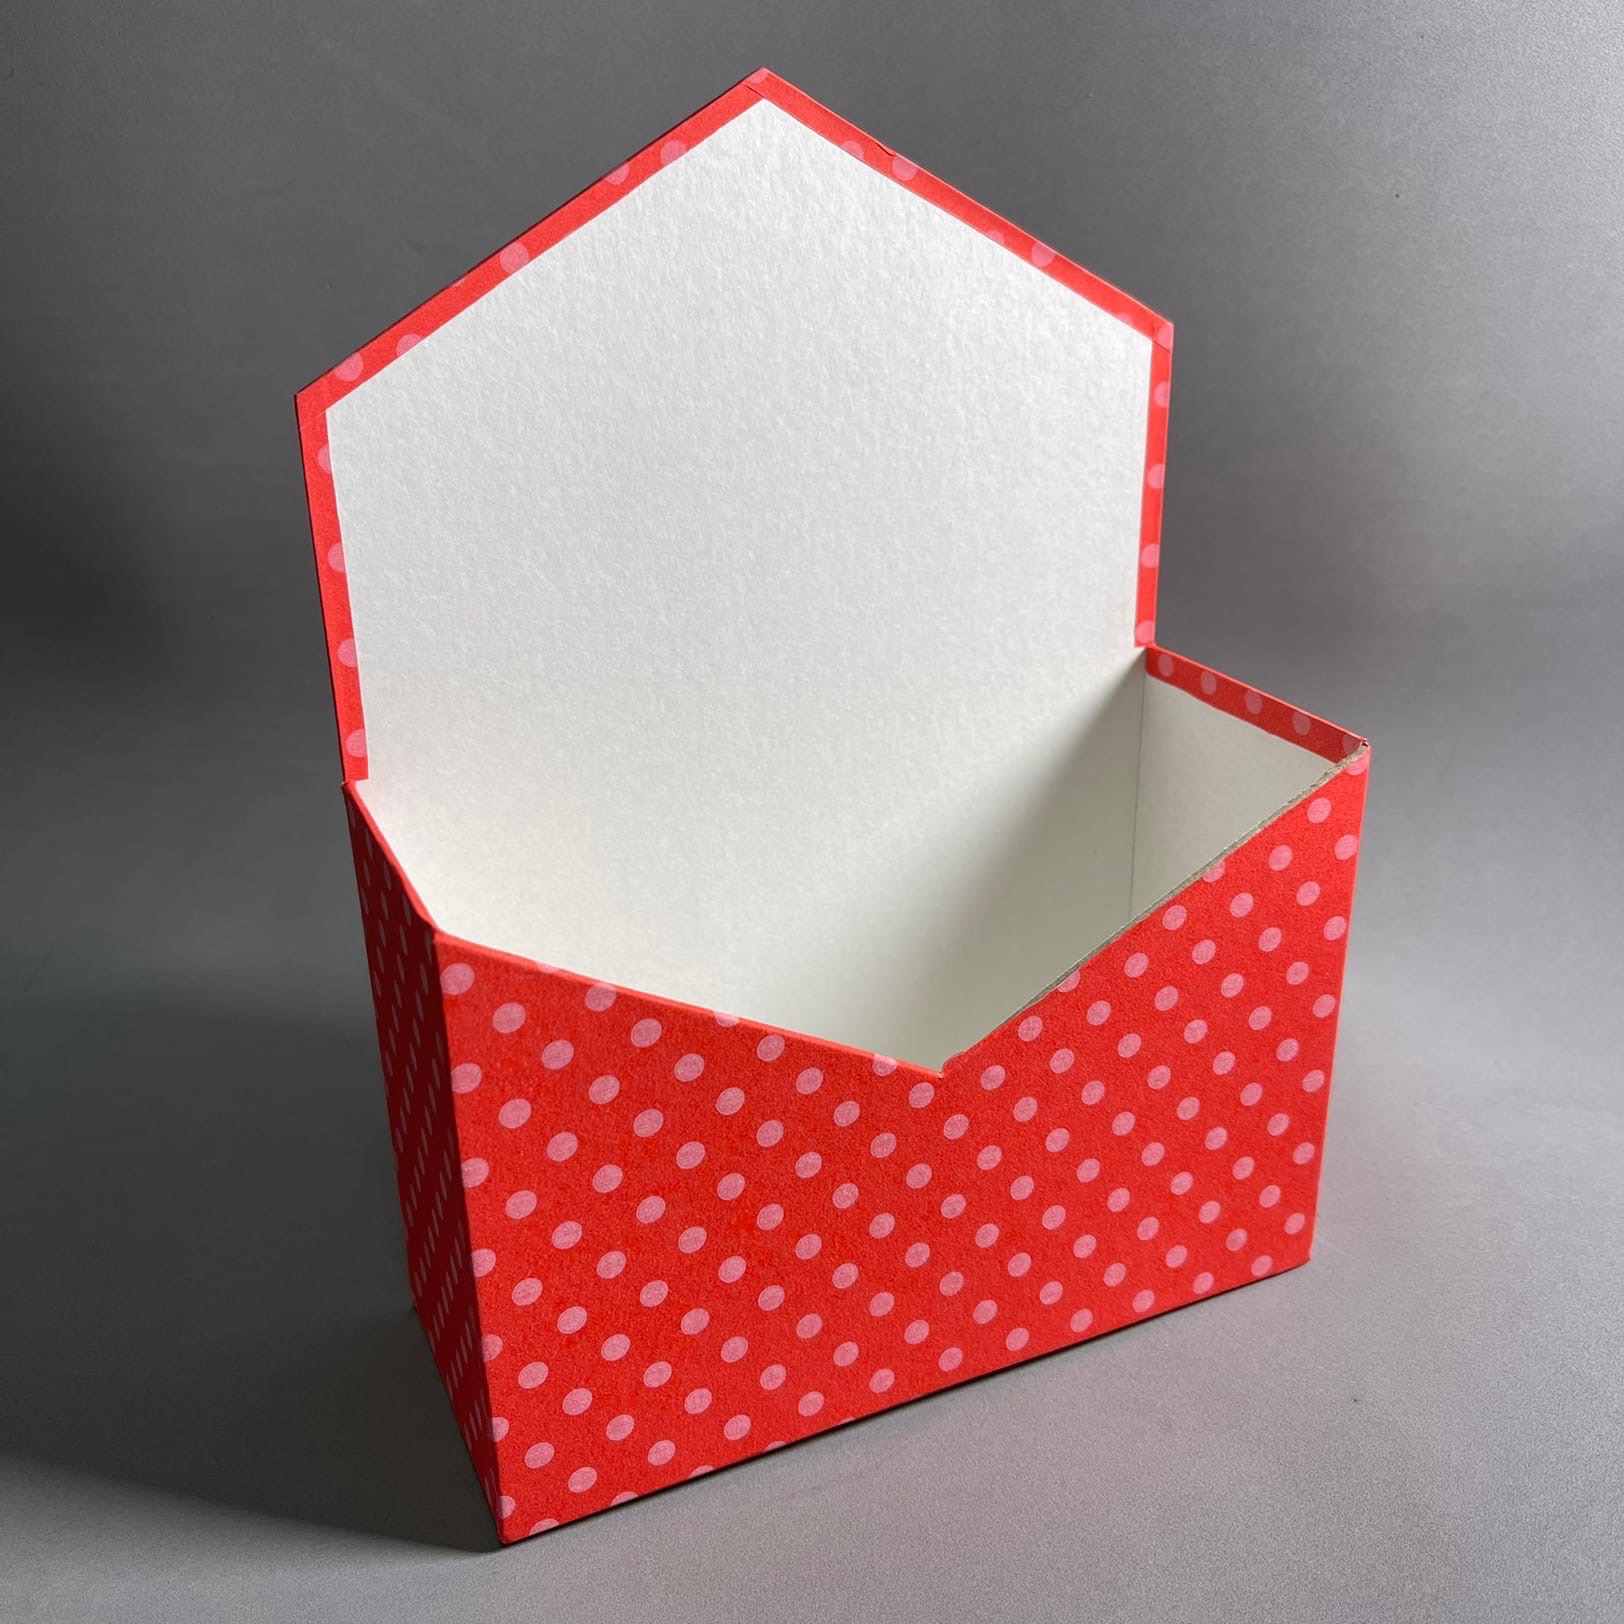 Как сделать букет в коробке: пошаговая инструкция